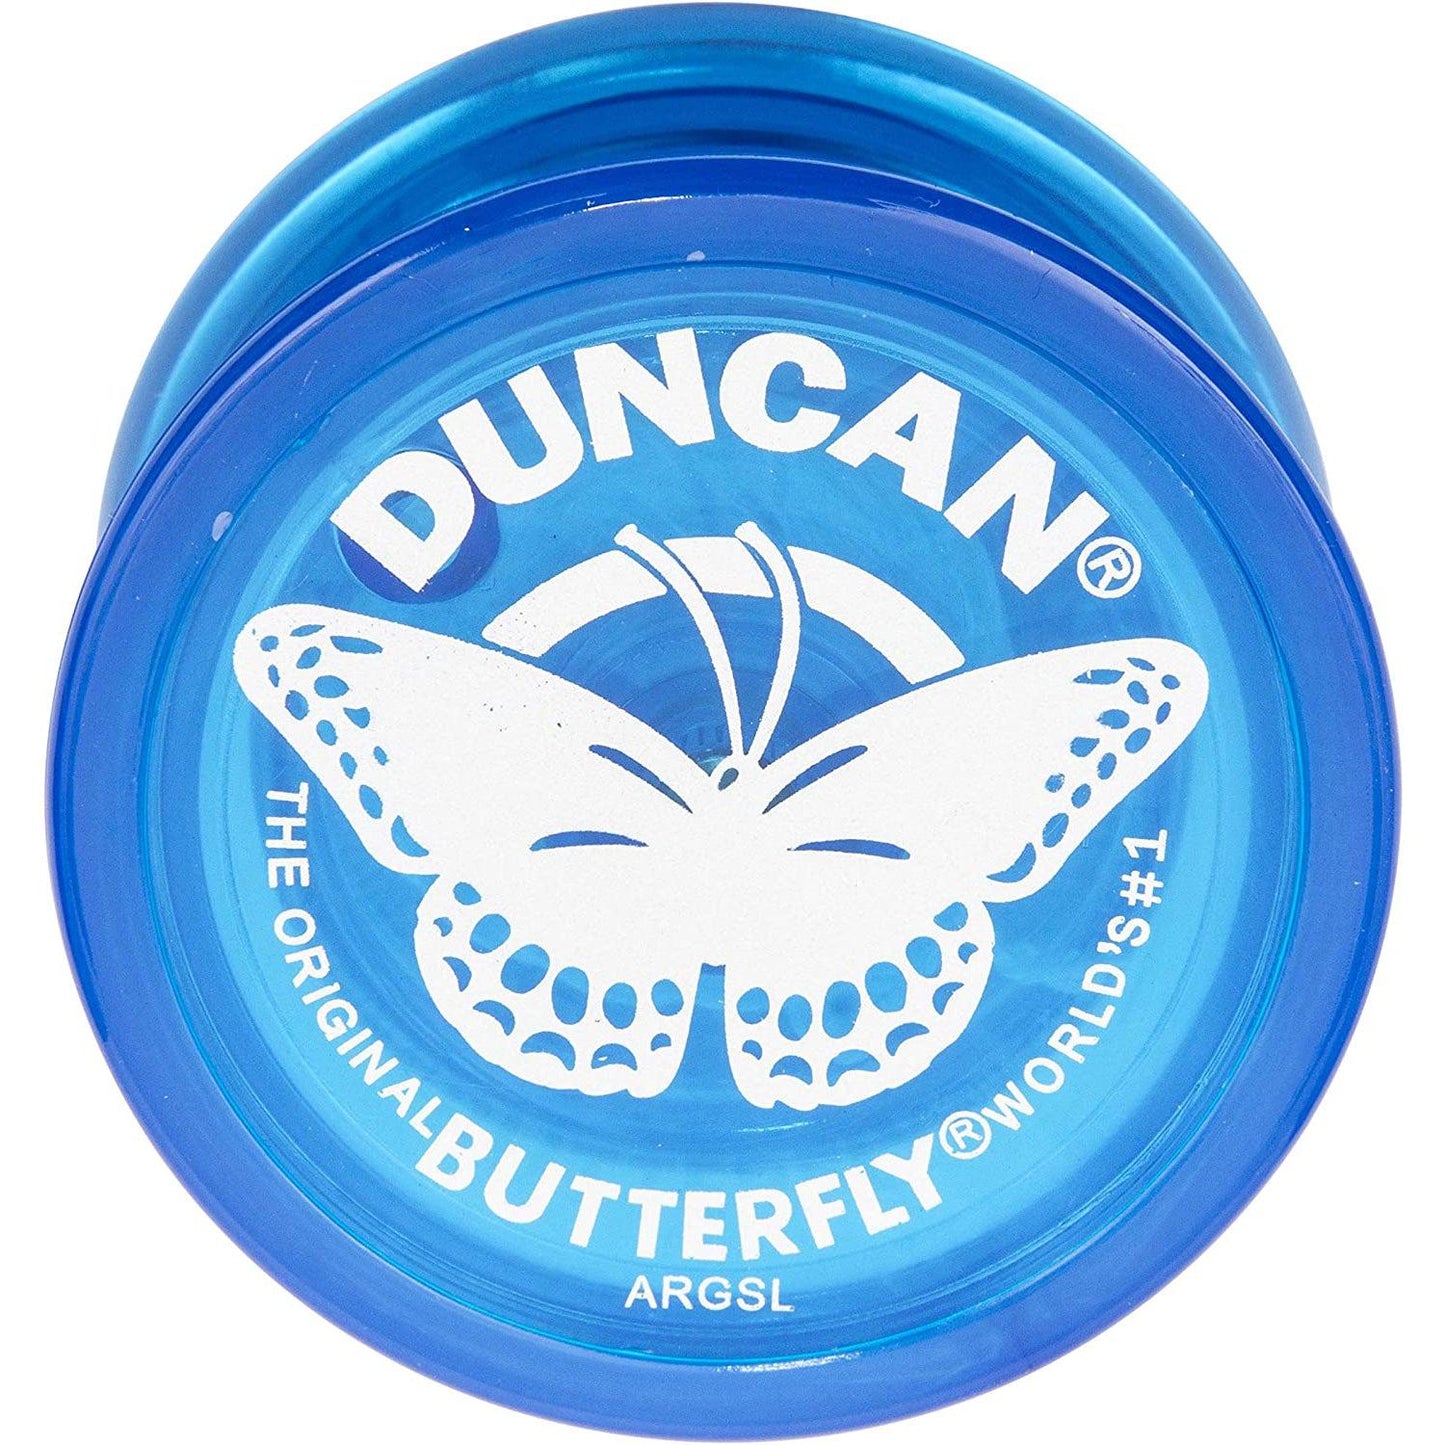 Duncan Classic Yo-yo: Butterfly